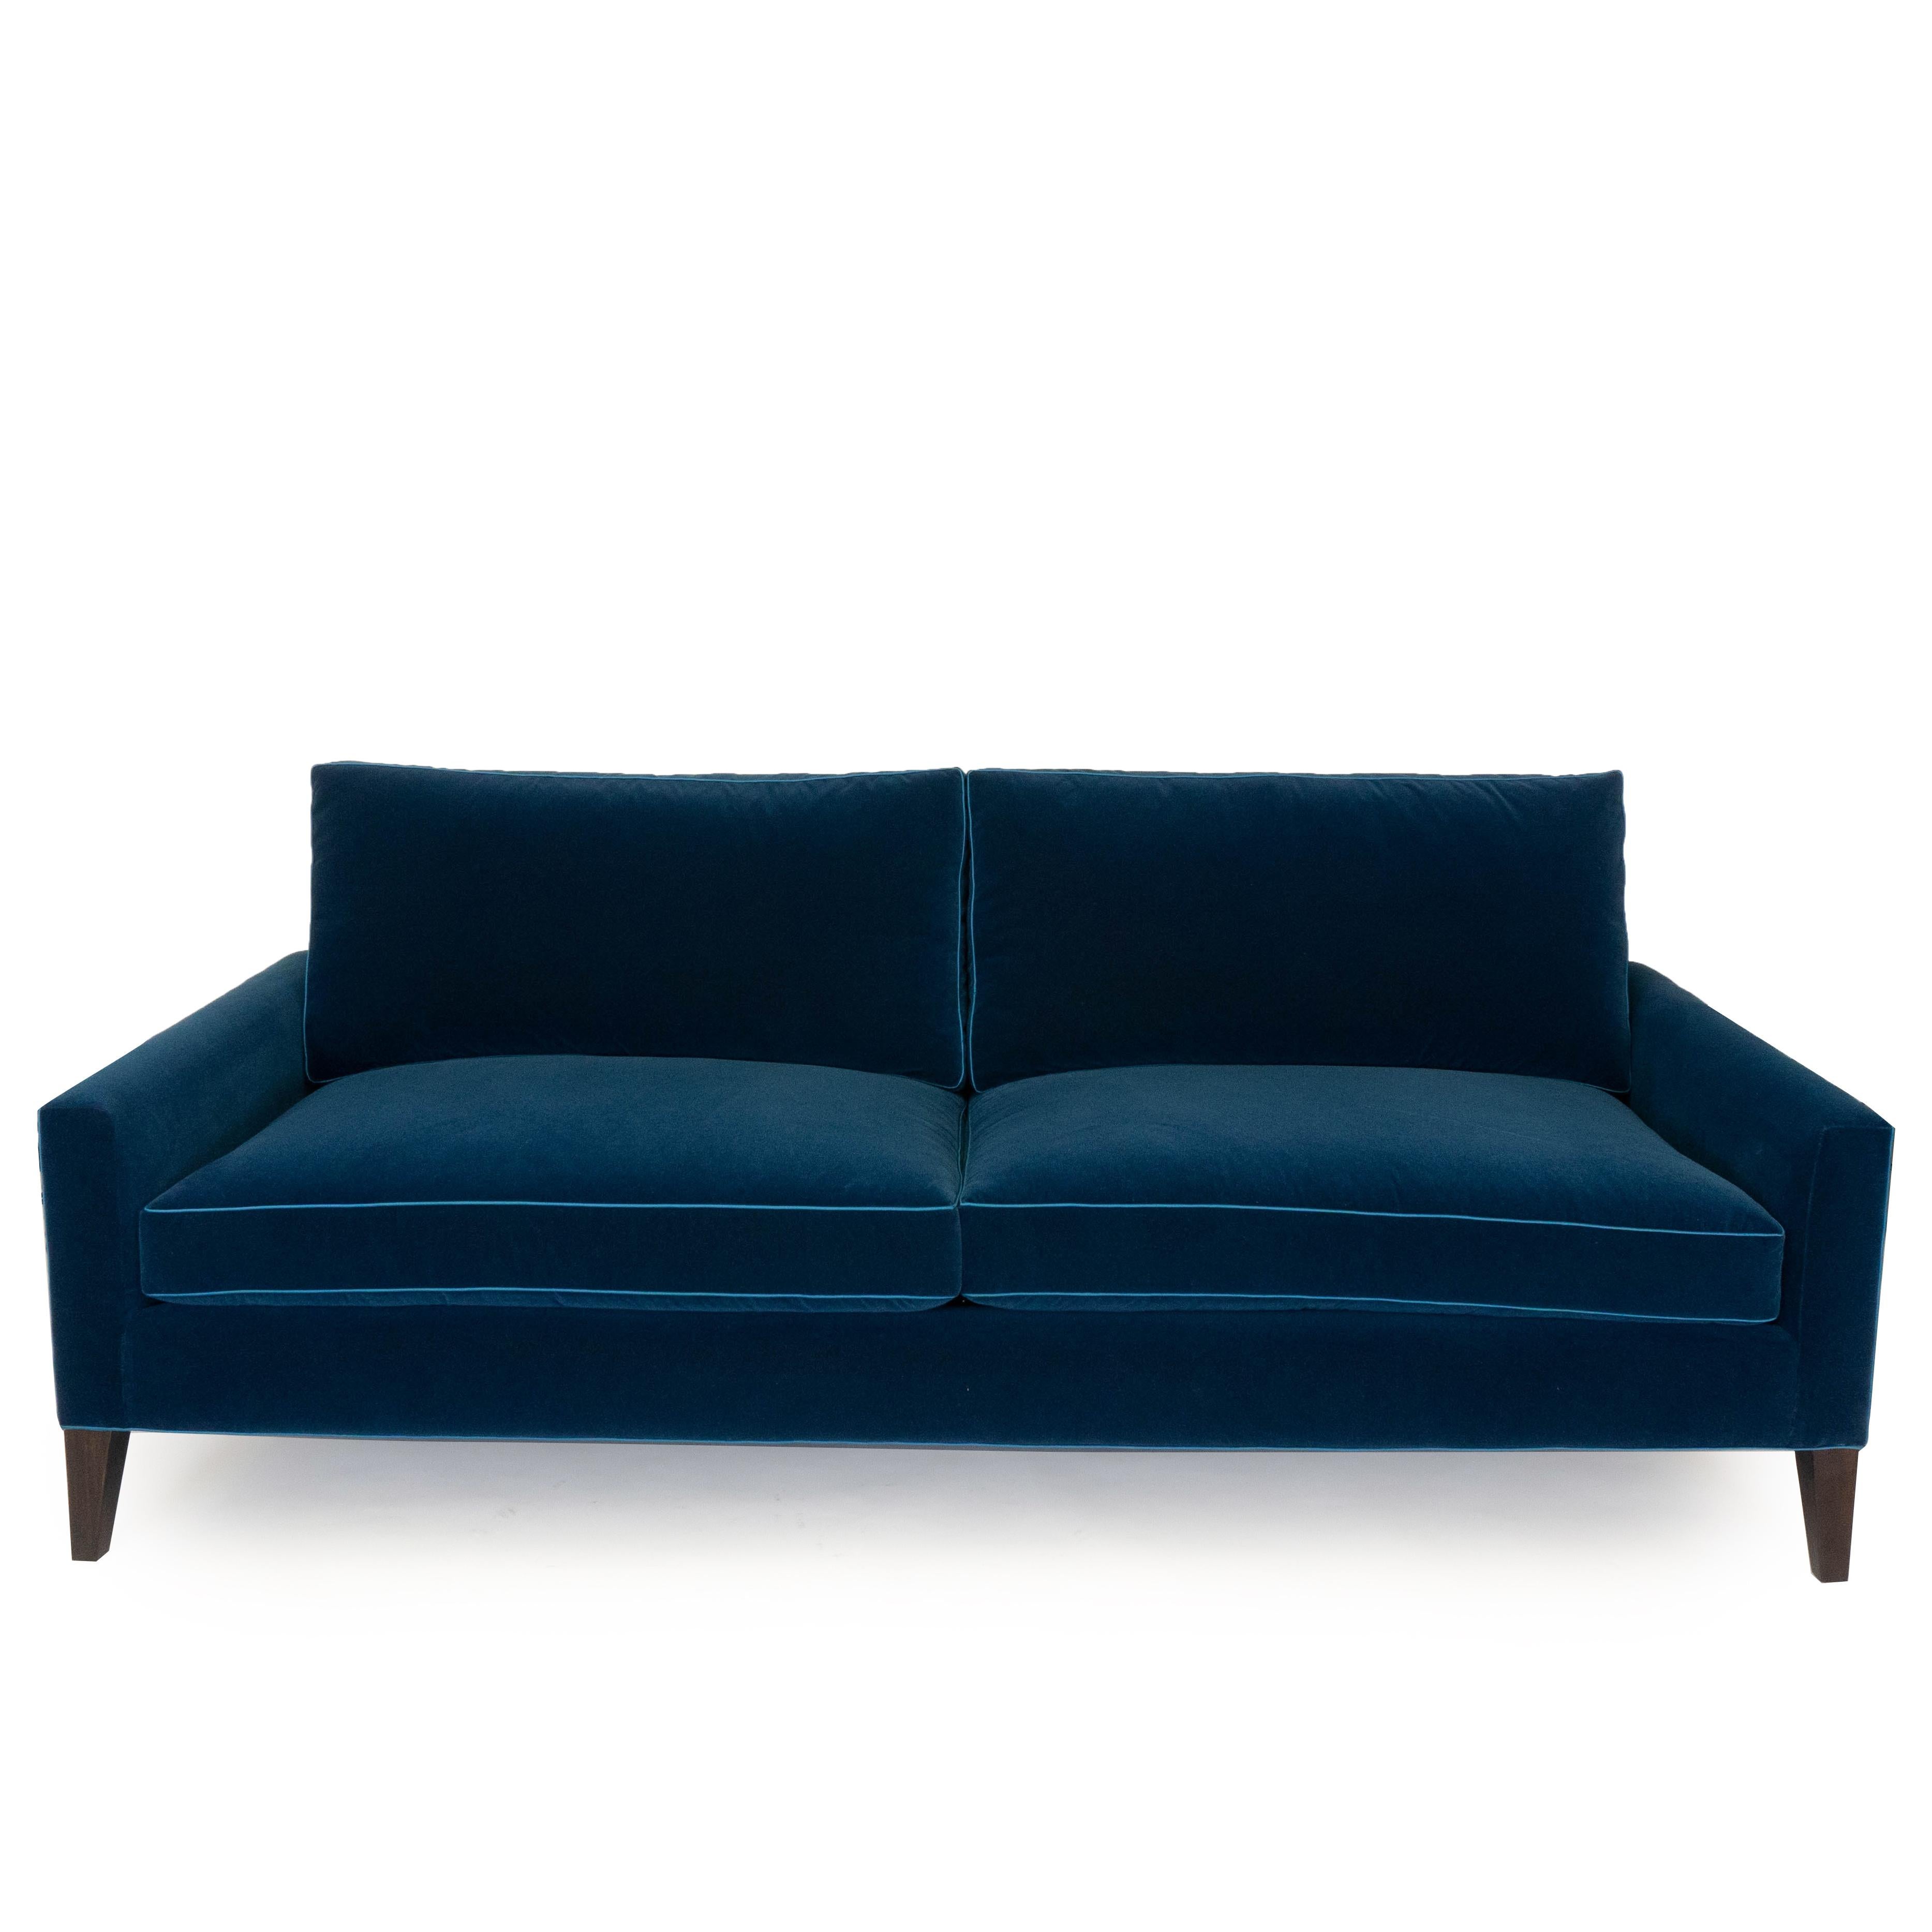 Unser modernes Sofa mit zwei Kissen ist mit einem dunkelblauen Samt bezogen, der sich wie Baumwolle anfühlt, und hat einen hellblauen Polyesterbesatz. Dieses Sofa ist aus Pappelholz handgefertigt und mit einem dunklen, nussbaumfarbenen Bein